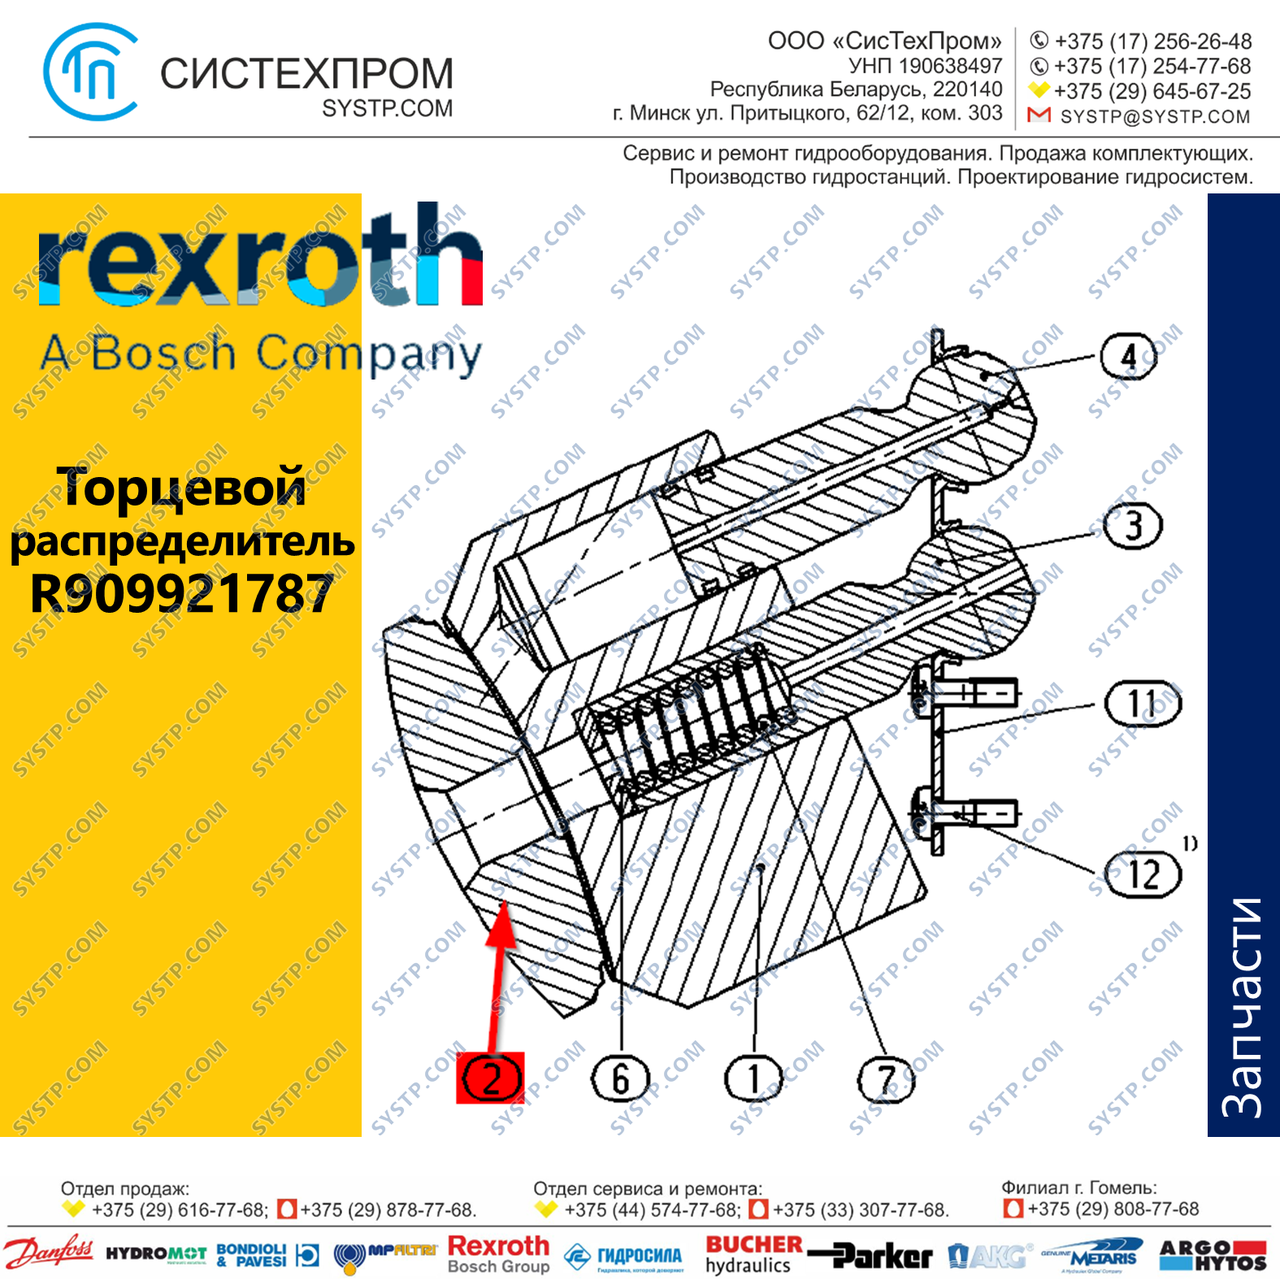 Торцевой распределитель R909921787 Bosch Rexroth